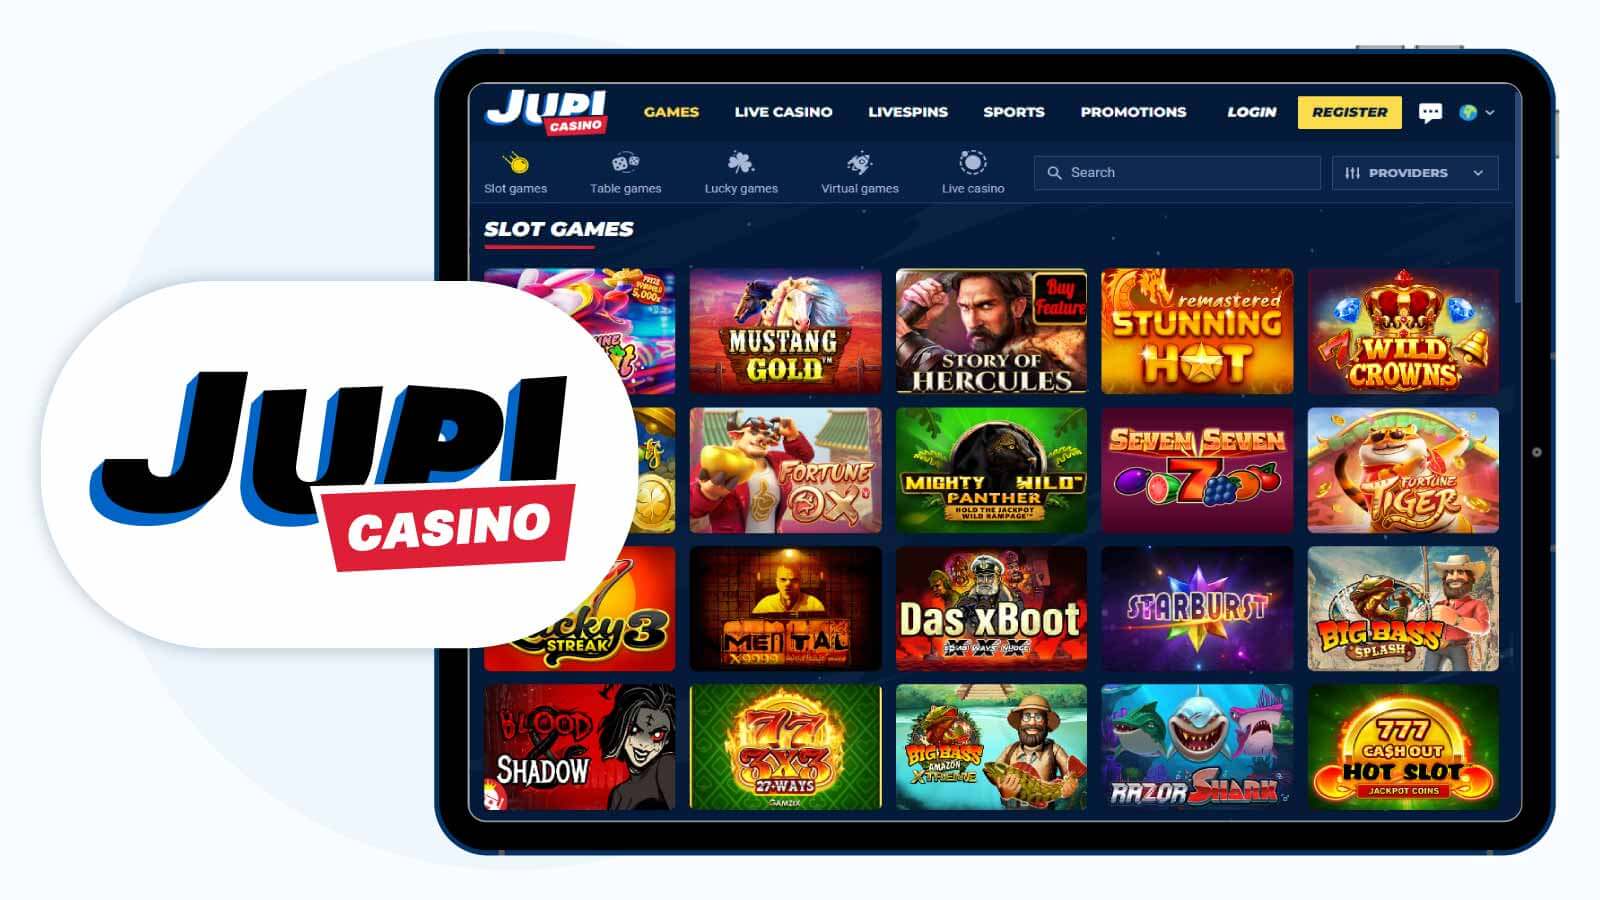 9-Jupi-Casino-The-Best-Casino-Bonus-for-High-Roller-Slot-Player